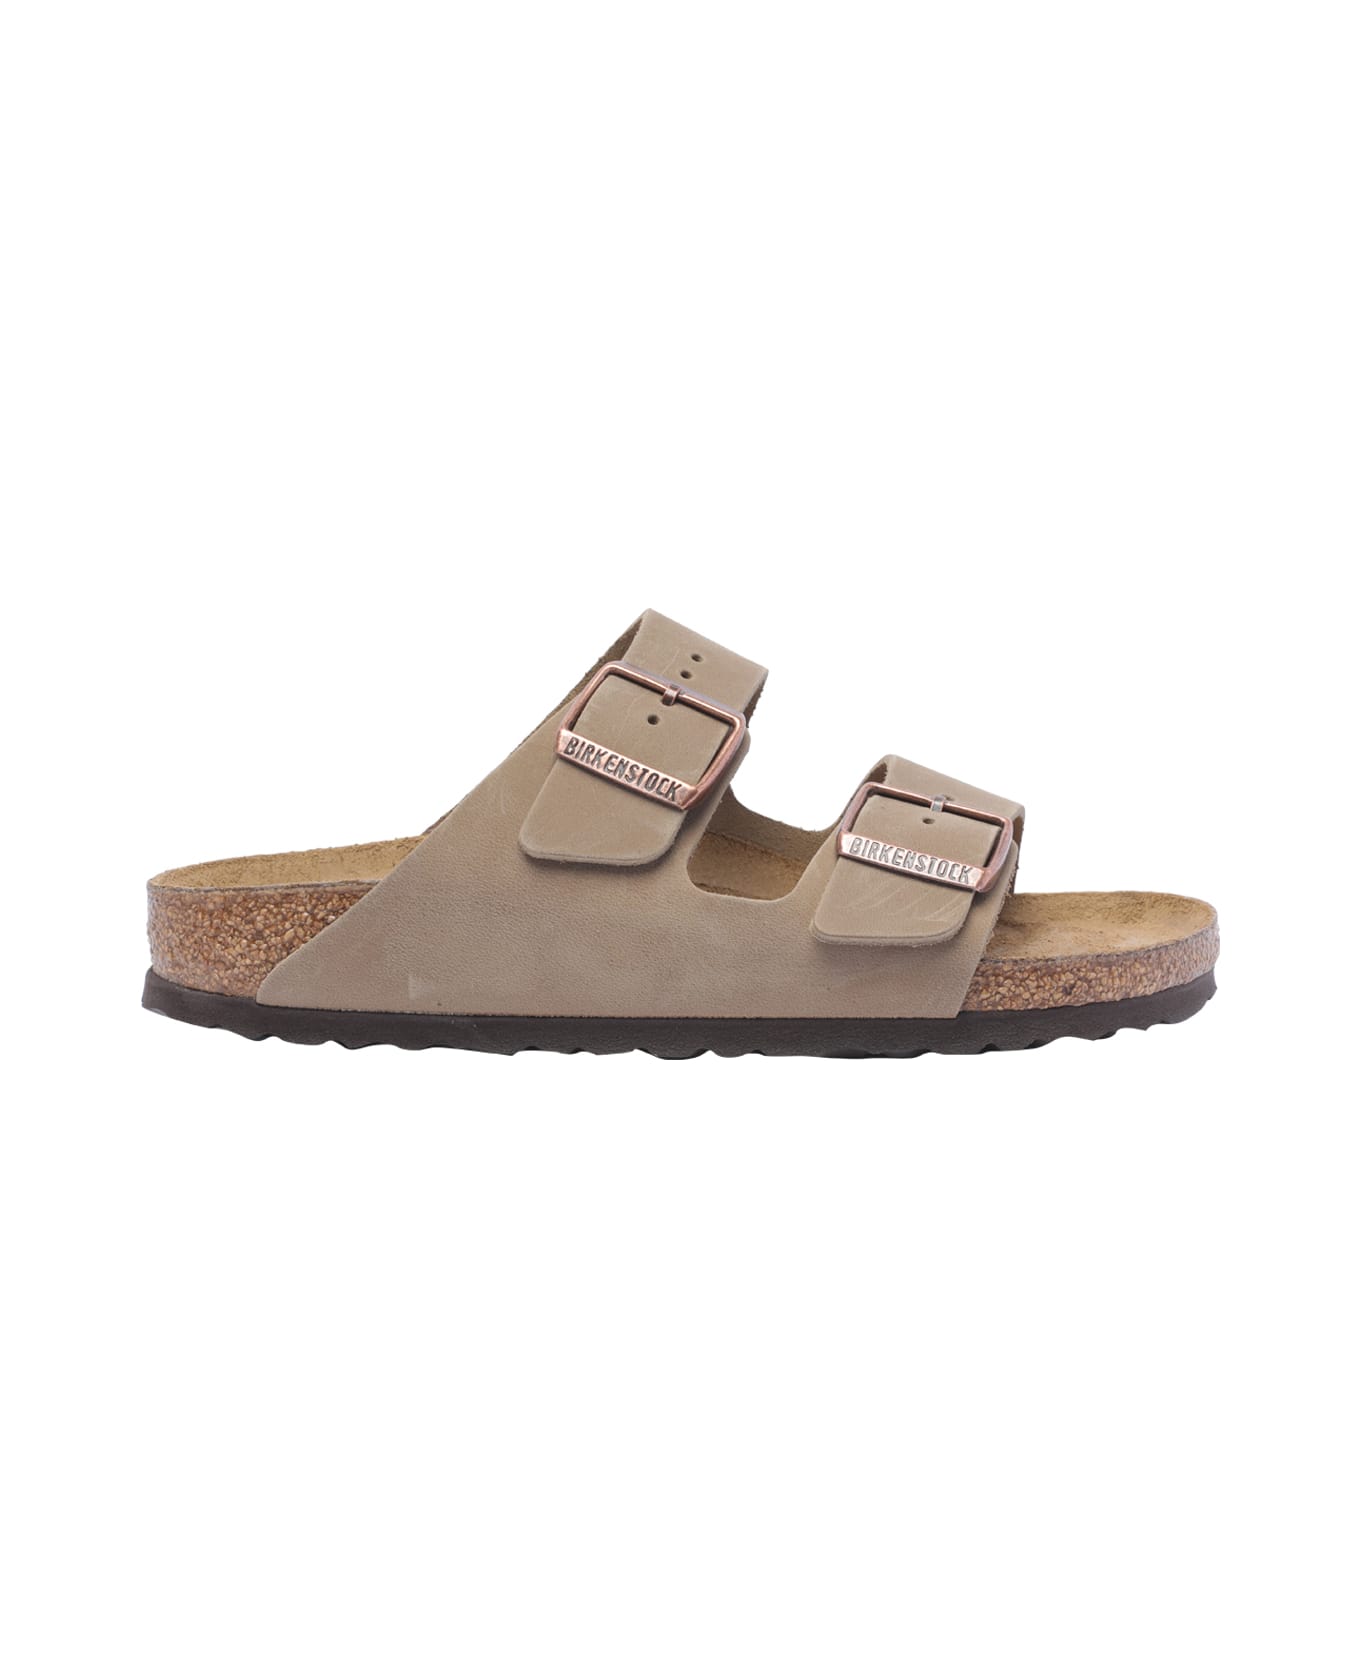 Birkenstock Arizona Sandals - Beige フラットシューズ